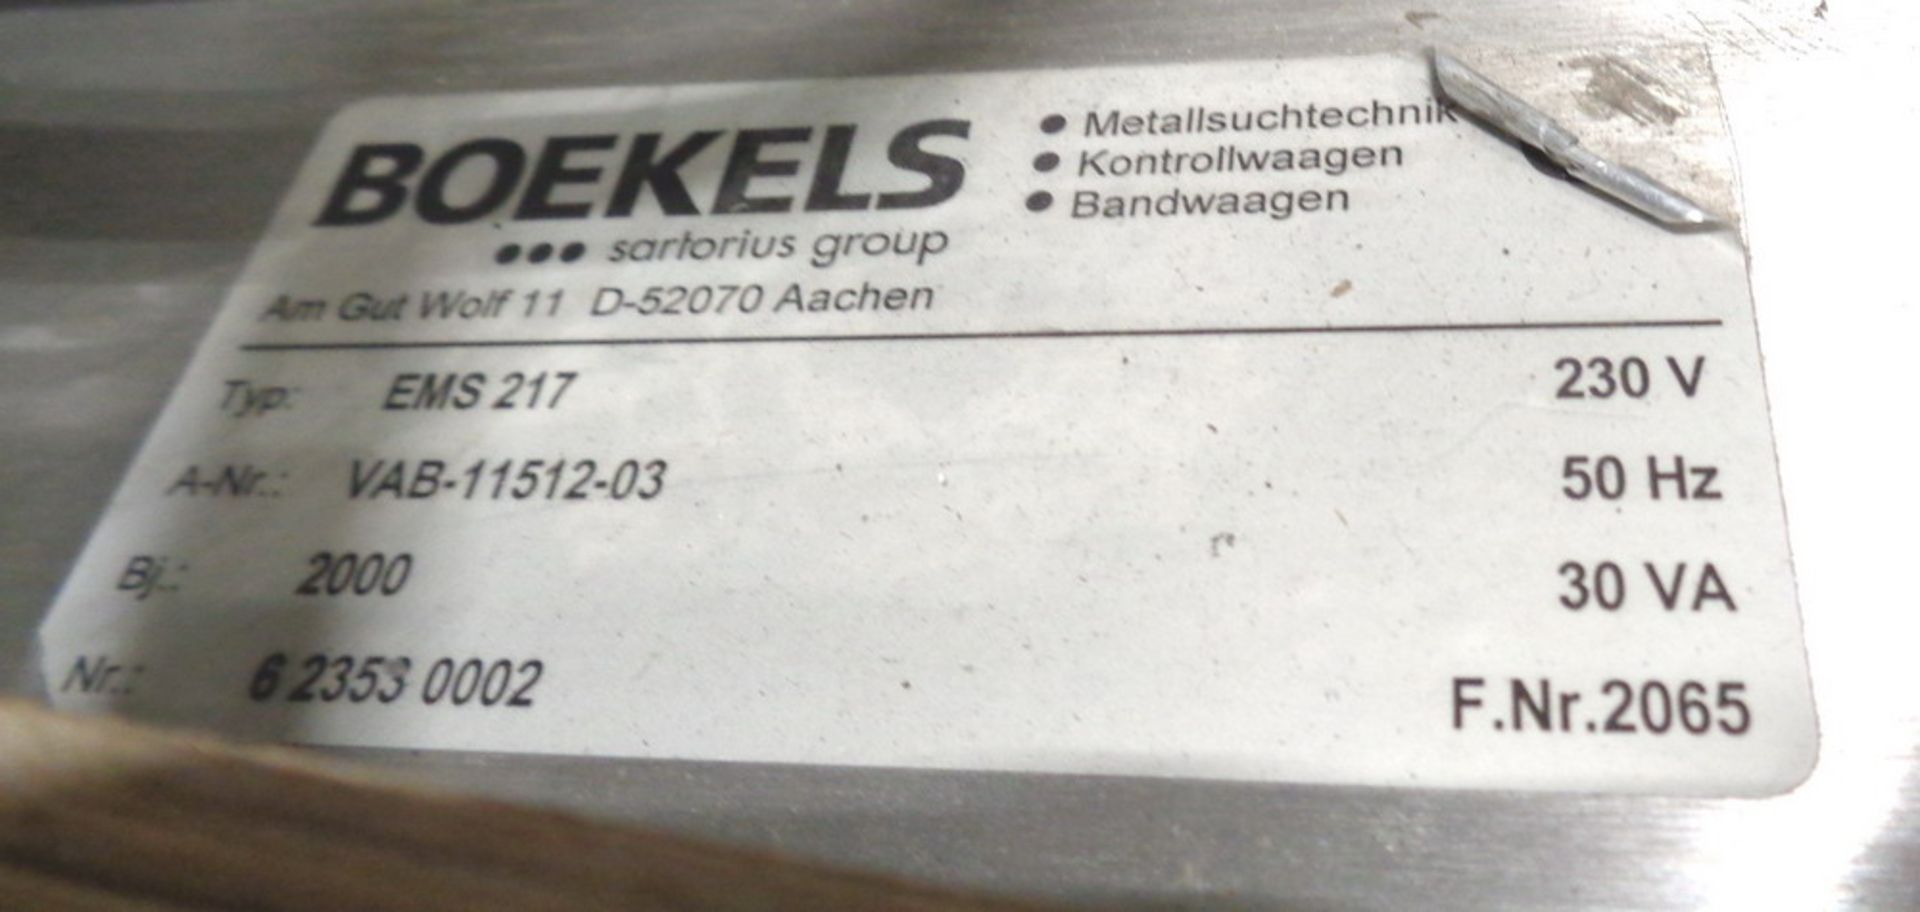 Boekels Packaging Line Bottle Metal Detector, type EMD 275 x 20, A-NRVAB11512-03 - Image 4 of 10